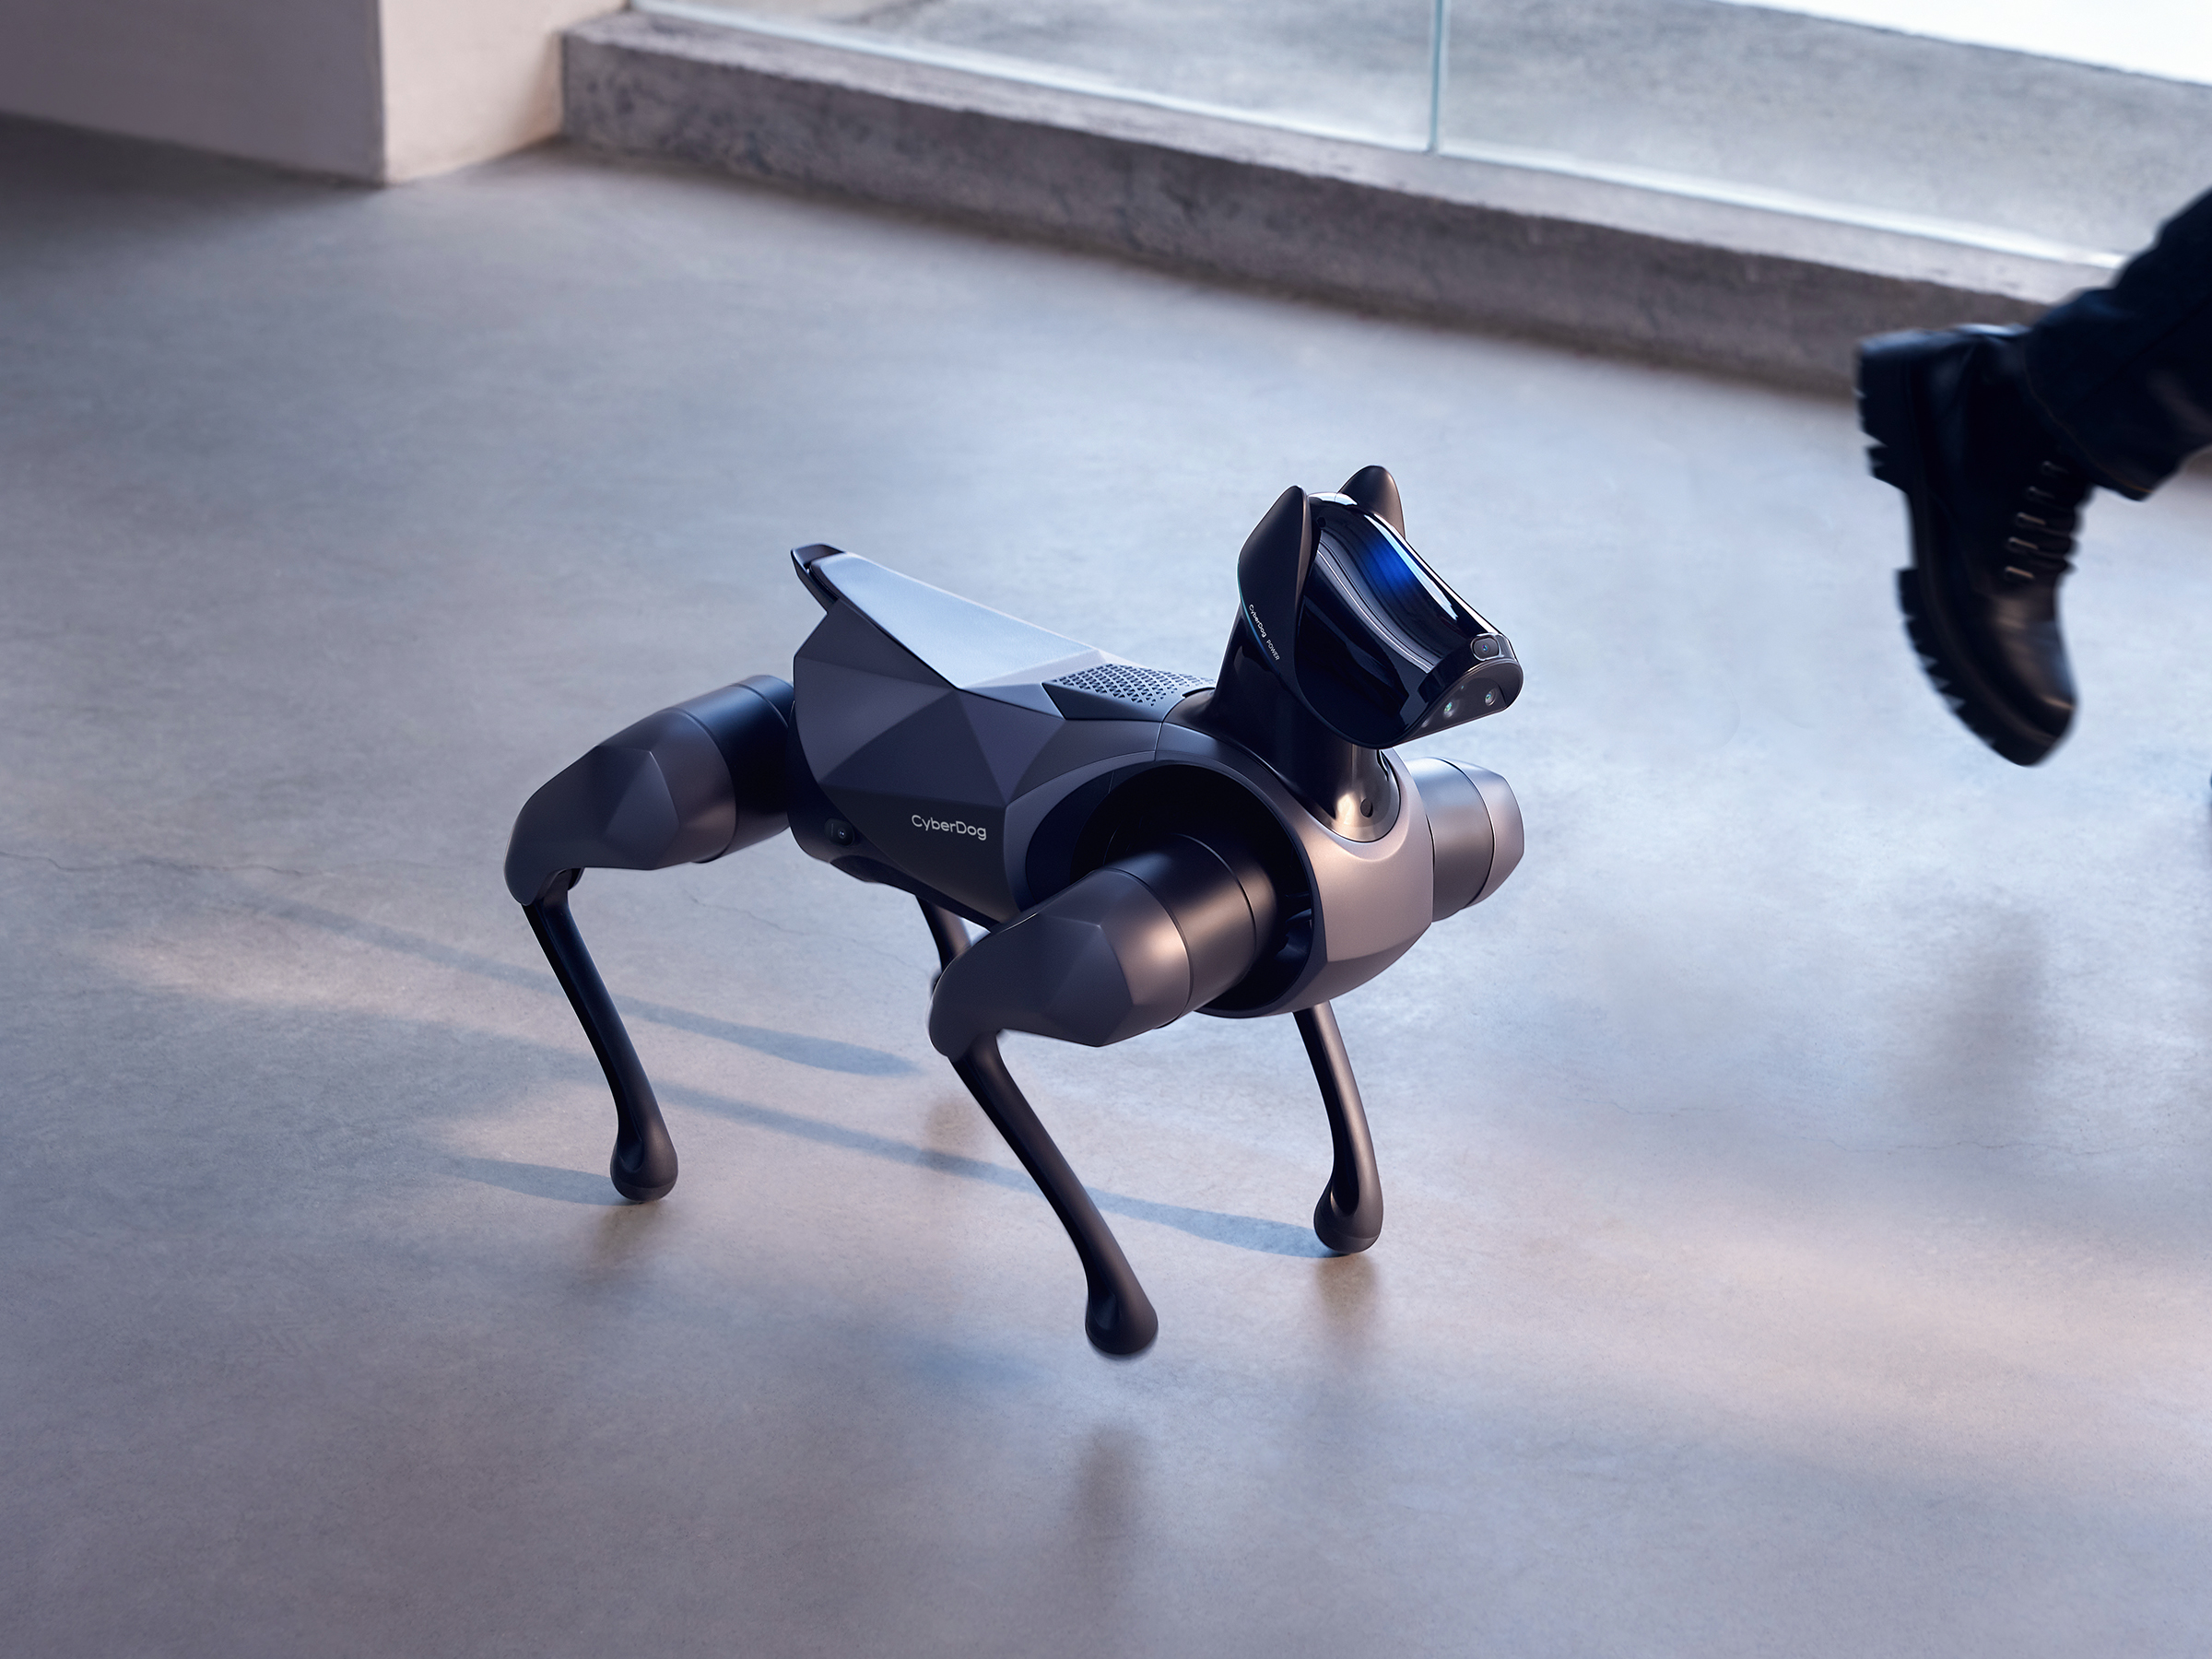 Itt a robotkutya, amit tényleg házikedvencnek terveztek